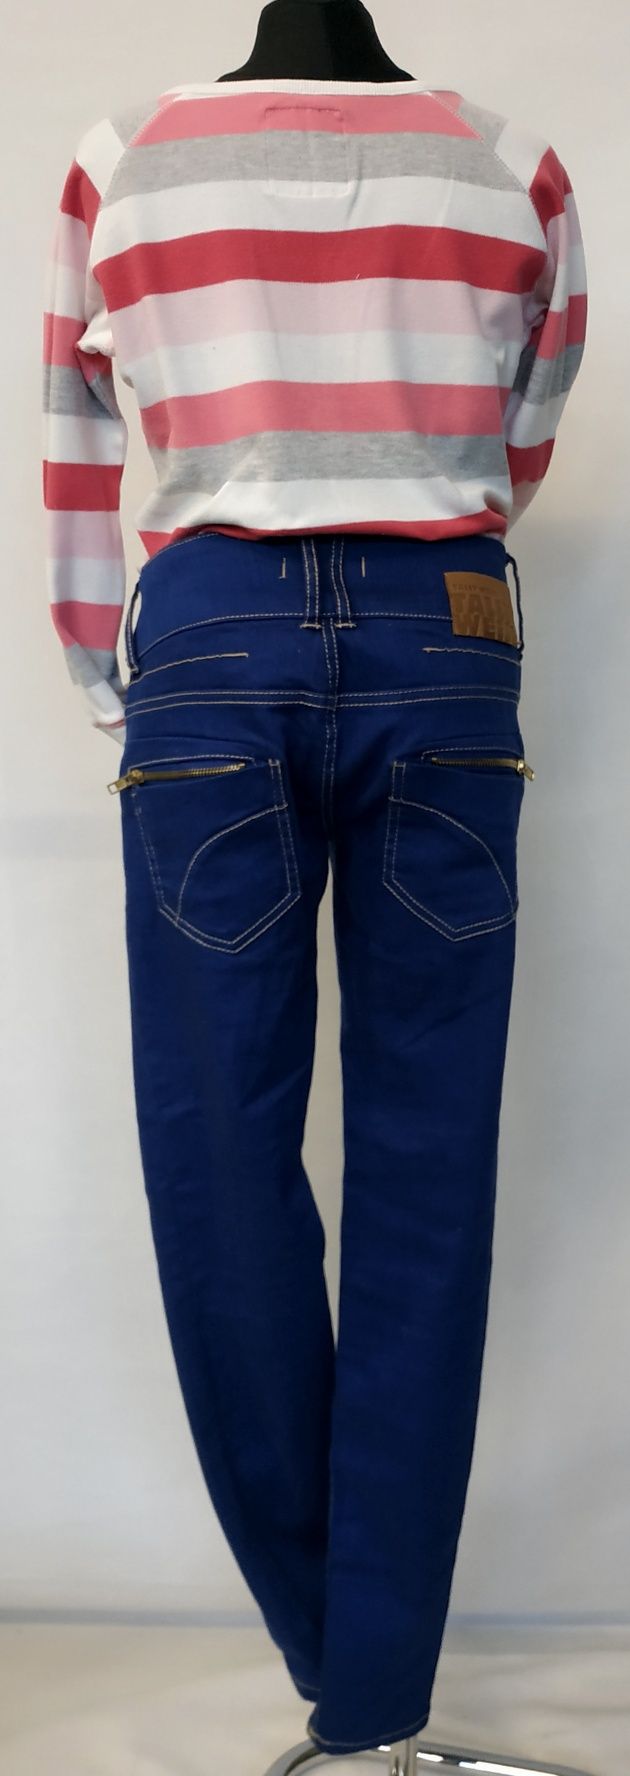 Spodnie damskie jeans dżinsowe damskie roz.36 Tally Weijl